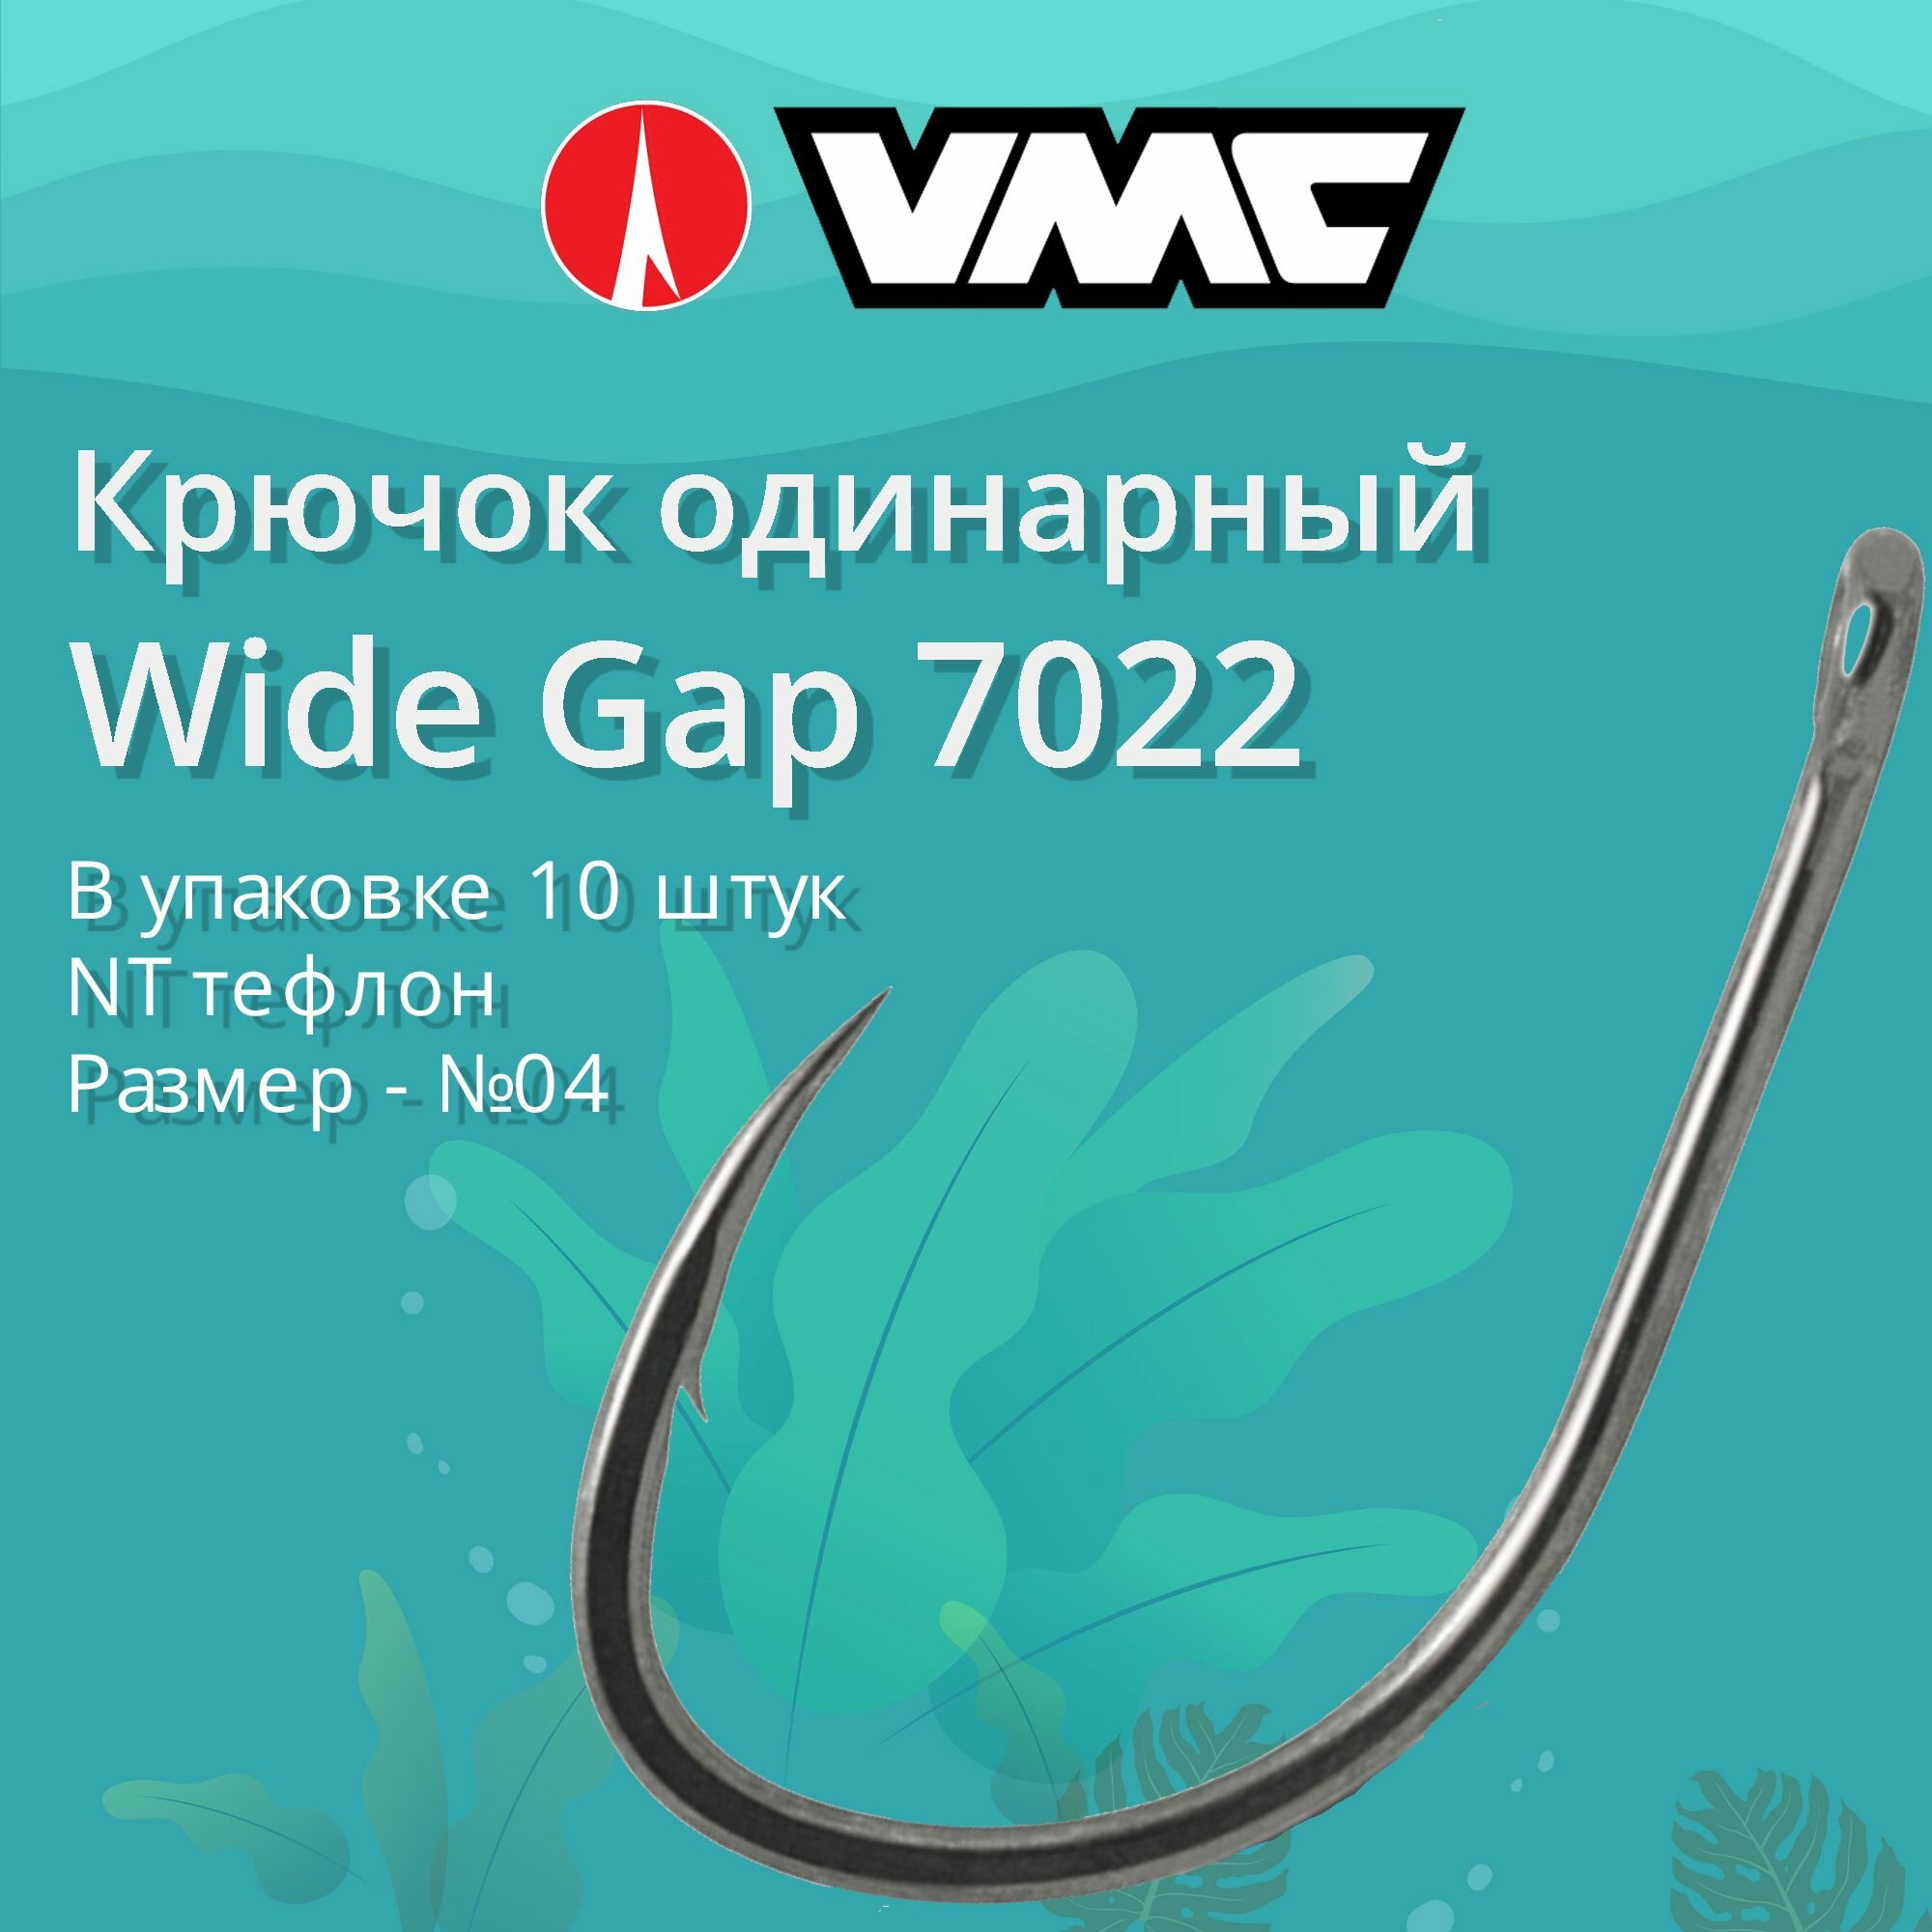 Крючки для рыбалки (одинарный) VMC Wide Gap 7022 NT (тефлон) №04 упаковка 10 штук